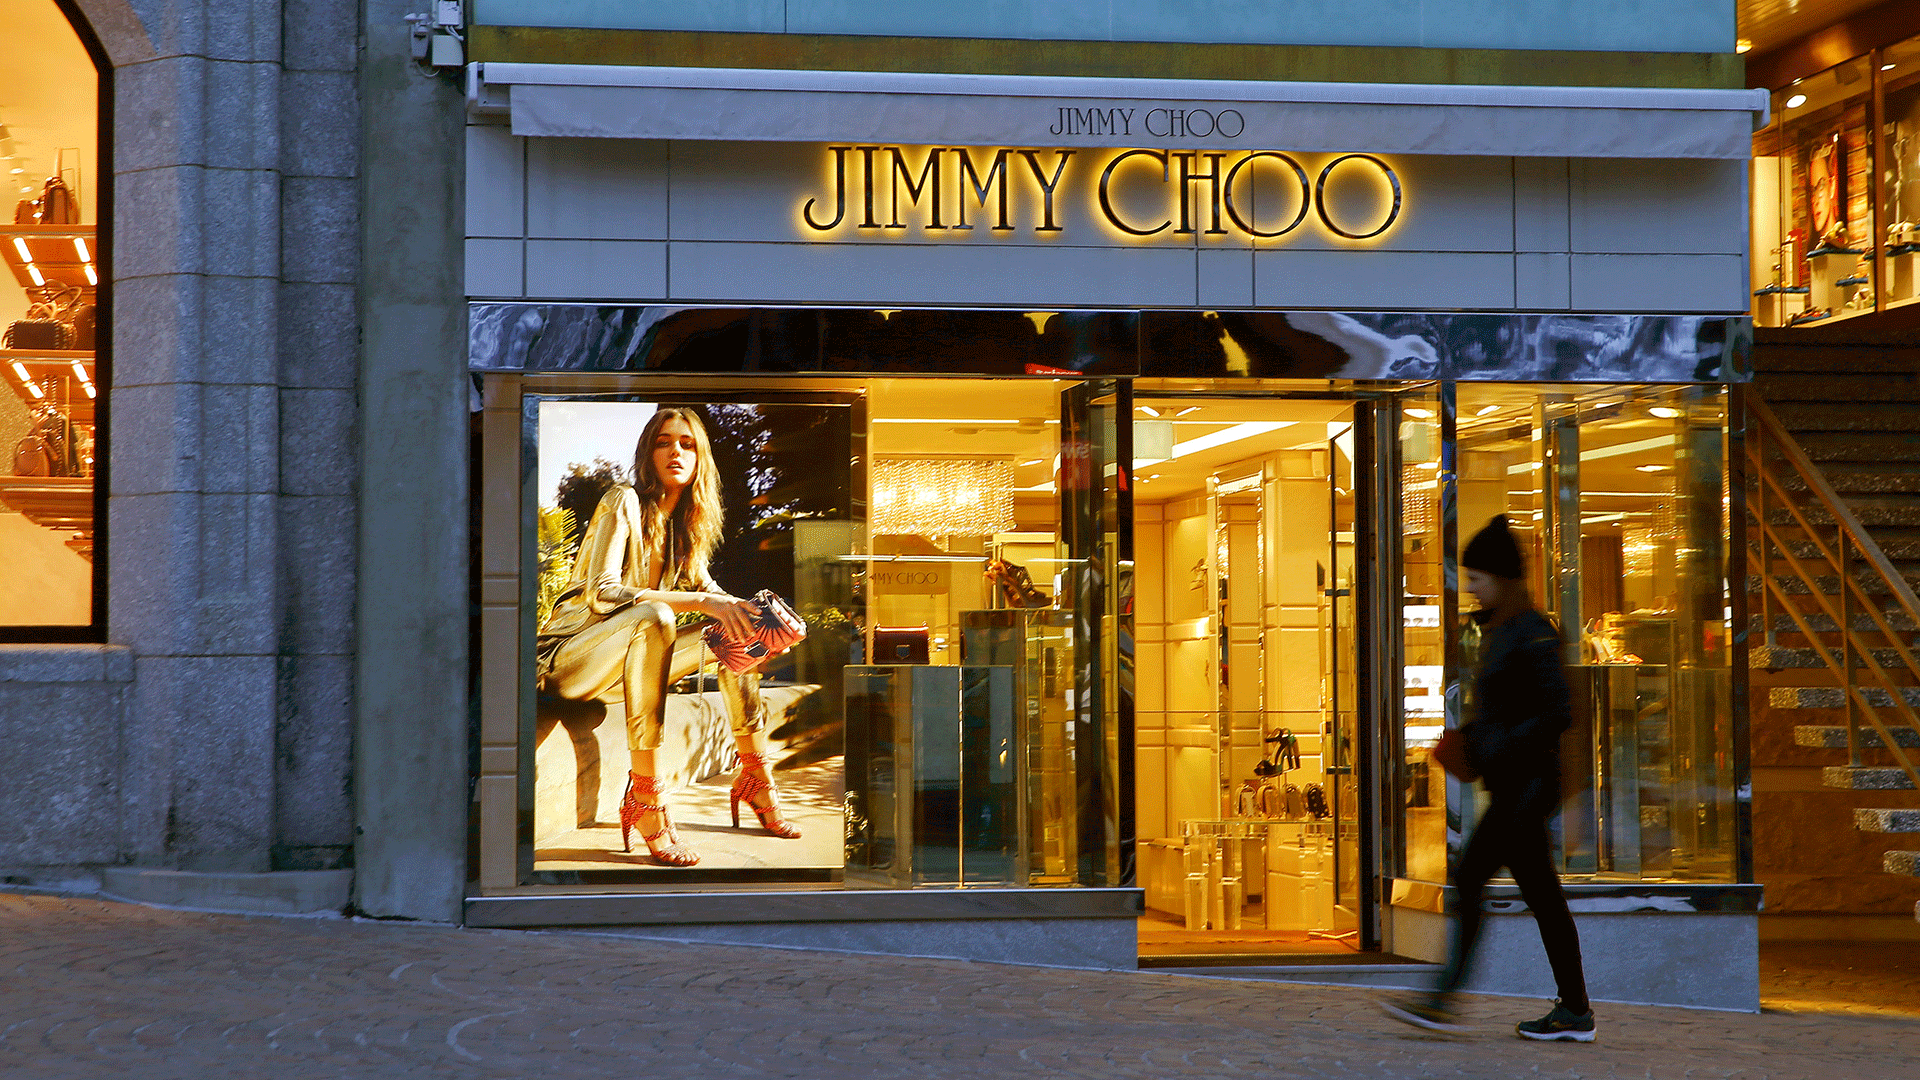 La marca Michael Kors compra Jimmy Choo por 1.000 millones de euros